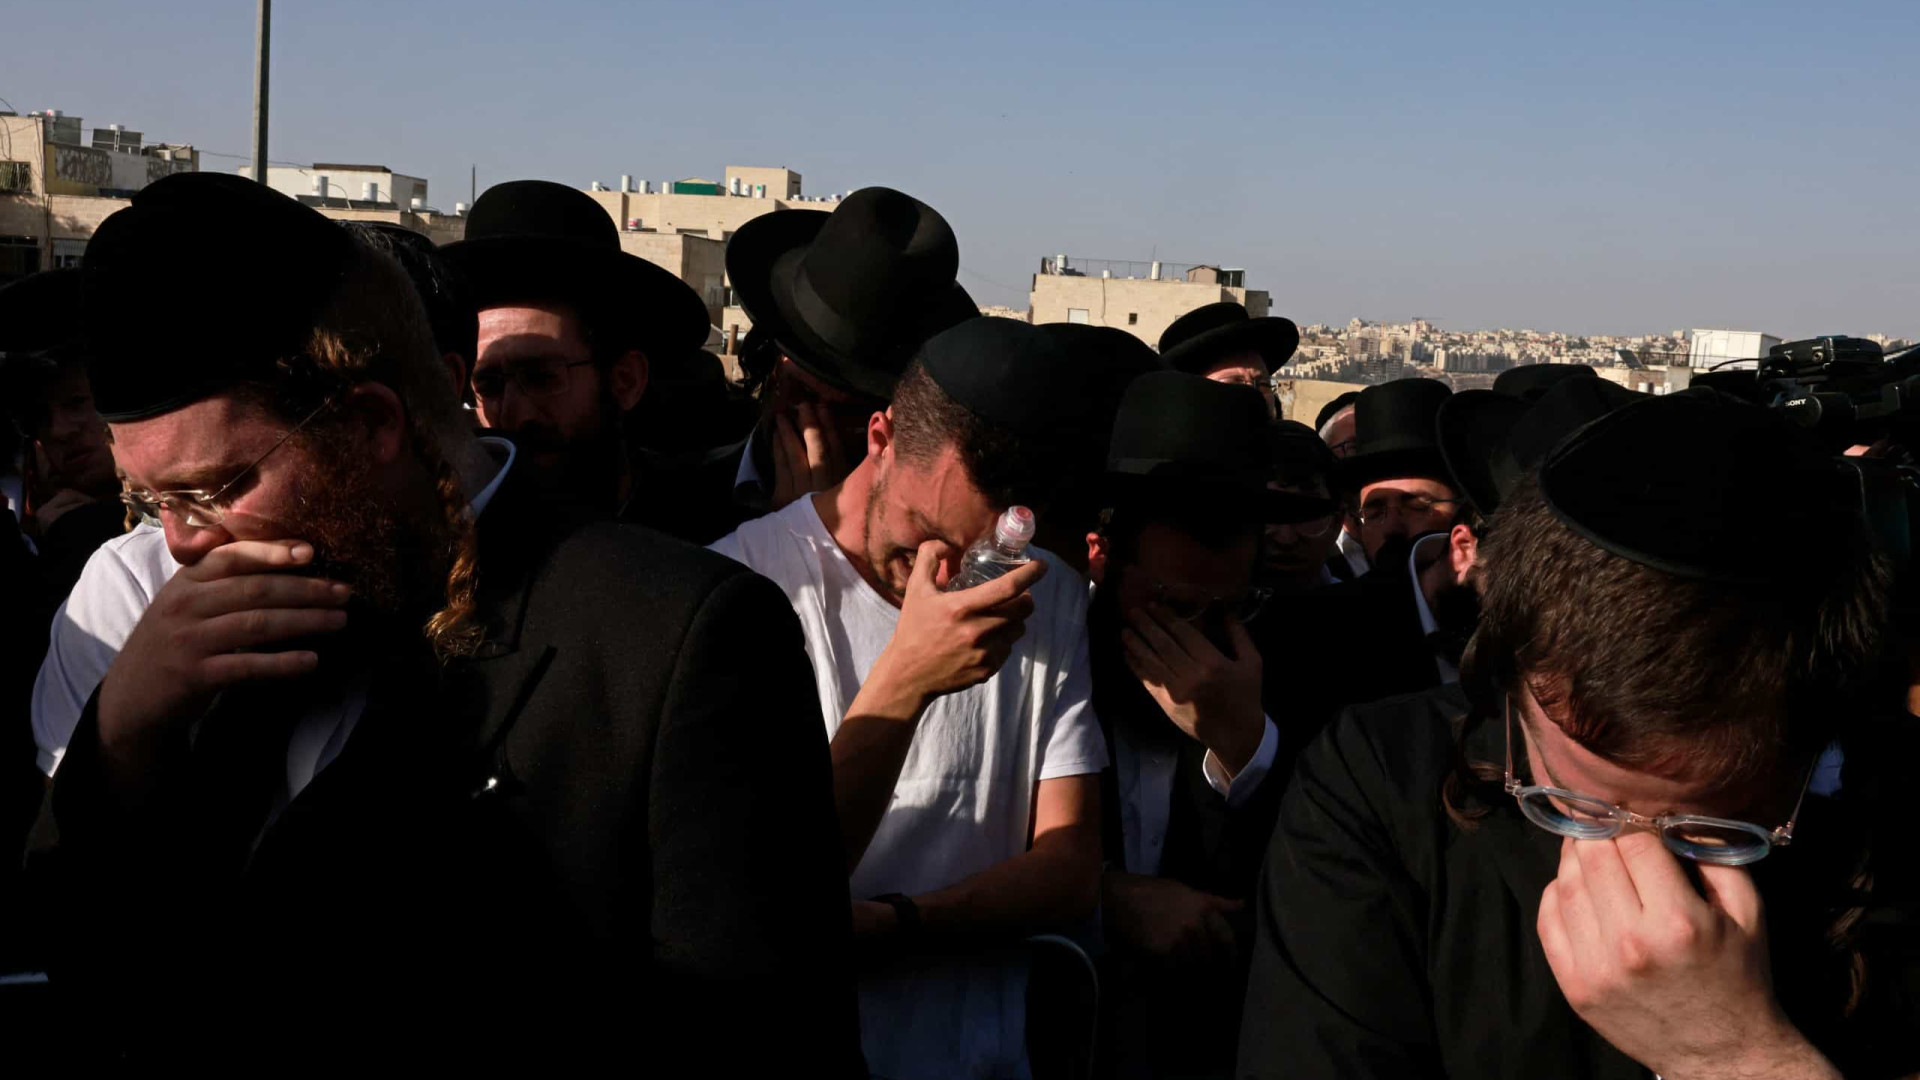 Em luto, Israel amplia esforços para identificar vítimas de tragédia durante evento religioso